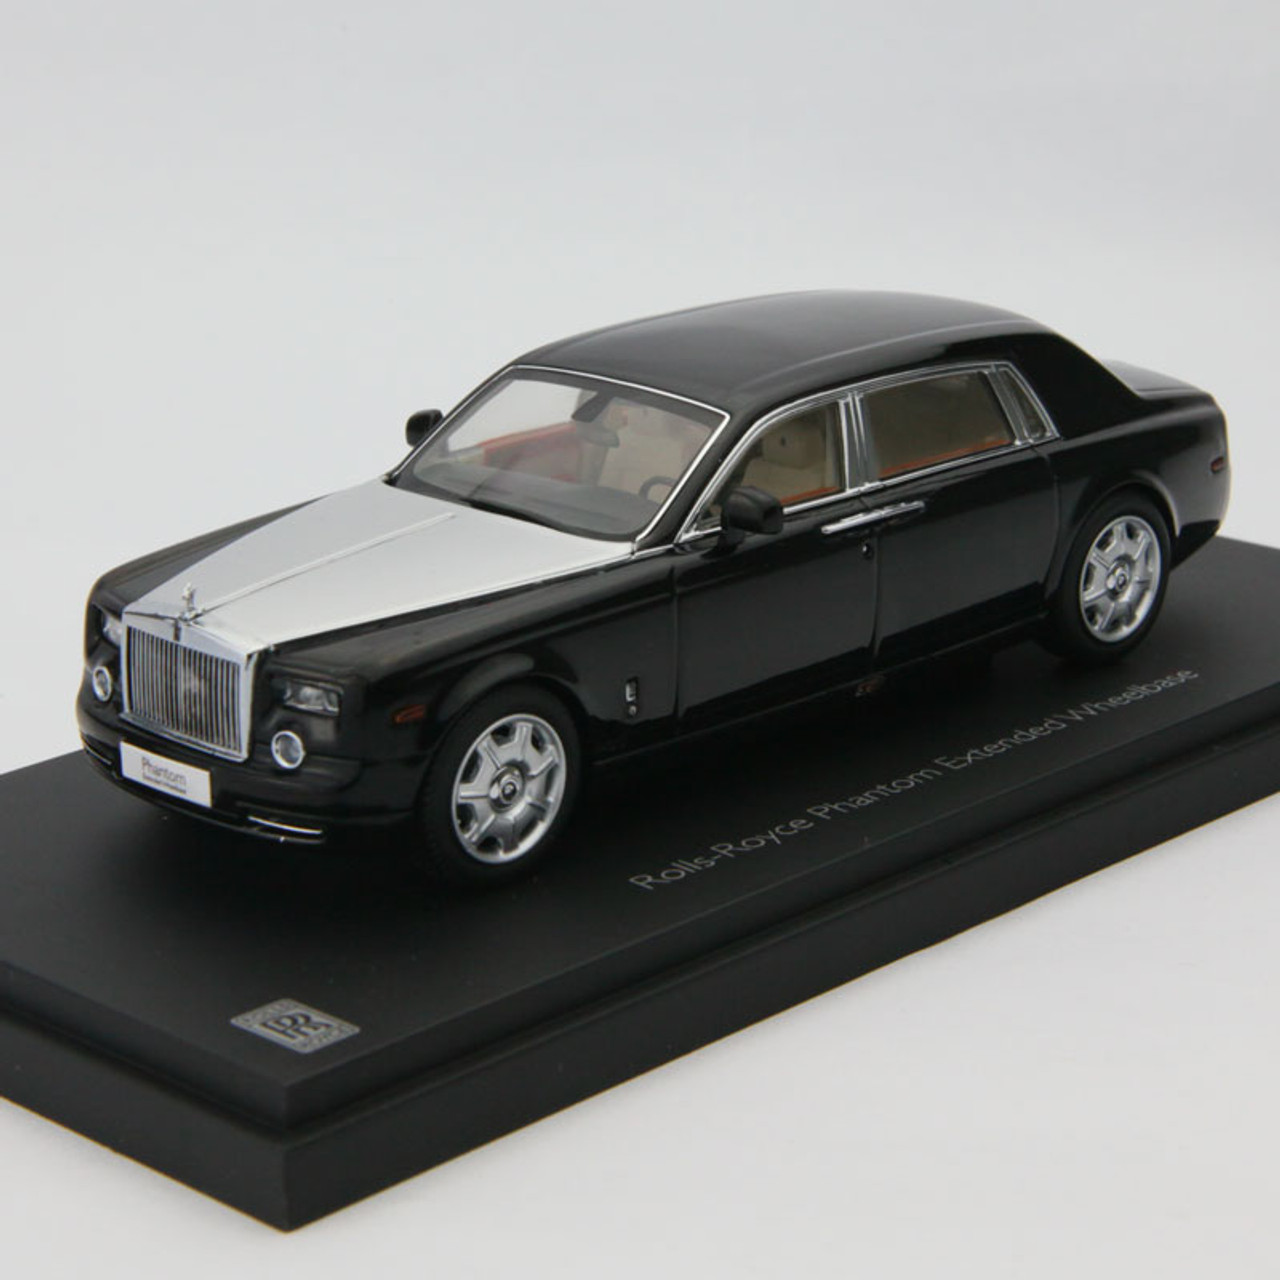 1/43 Kyosho Rolls-Royce Phantom Extended Wheelbase (Black)